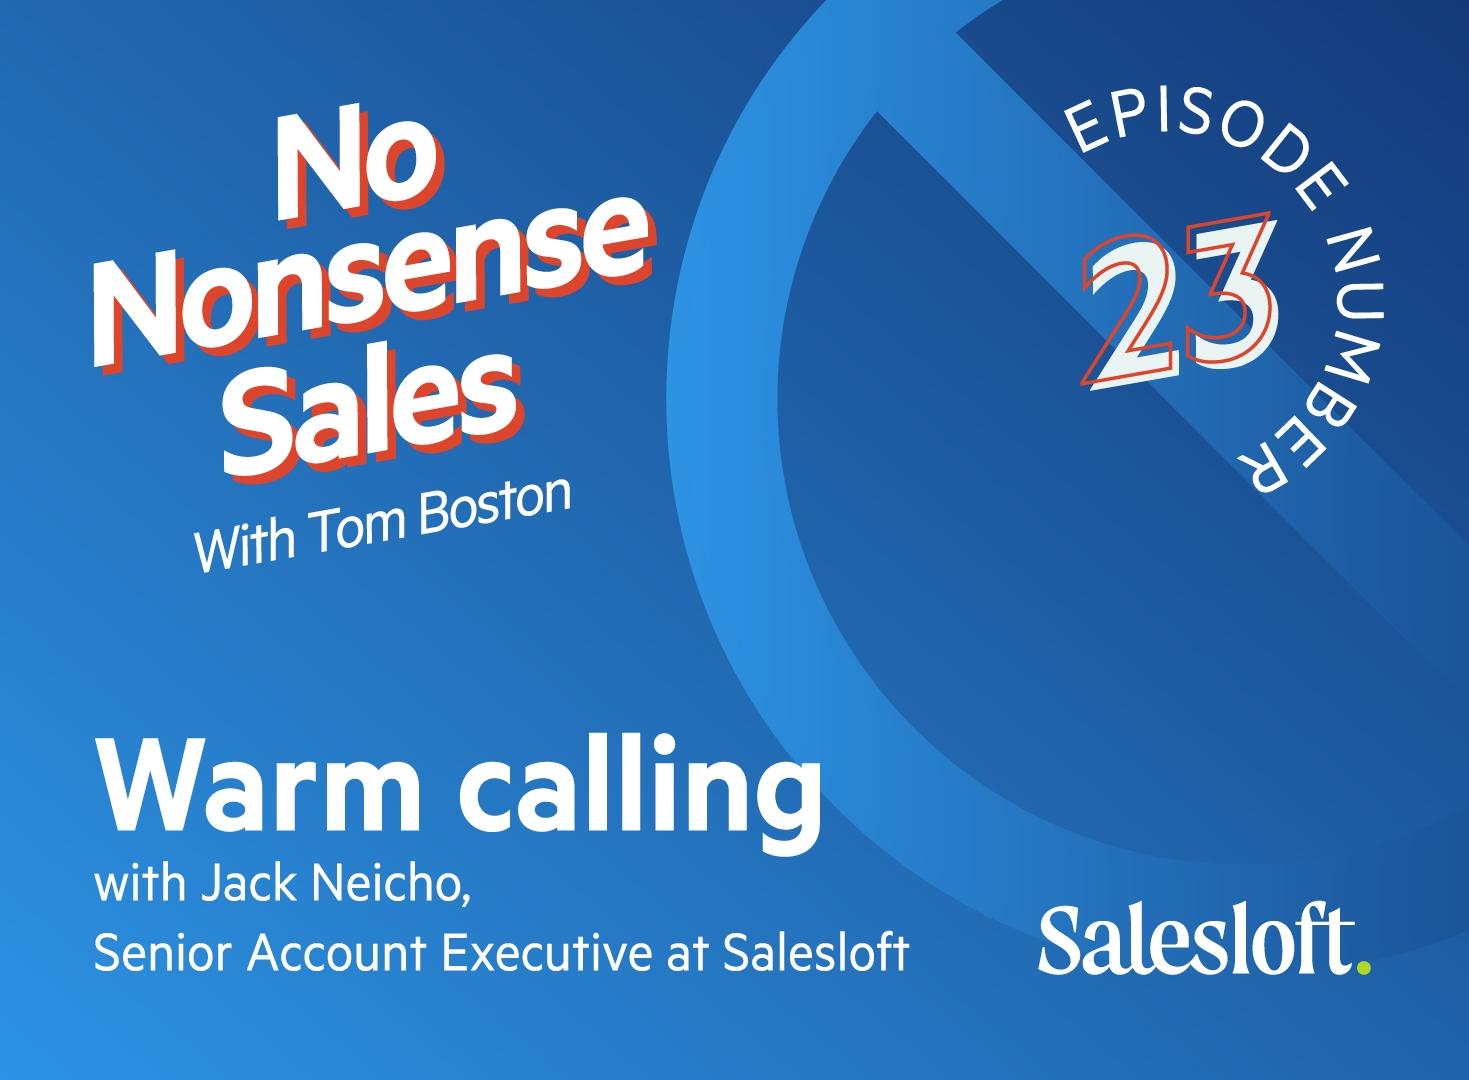 No Nonsense Sales Episode 23